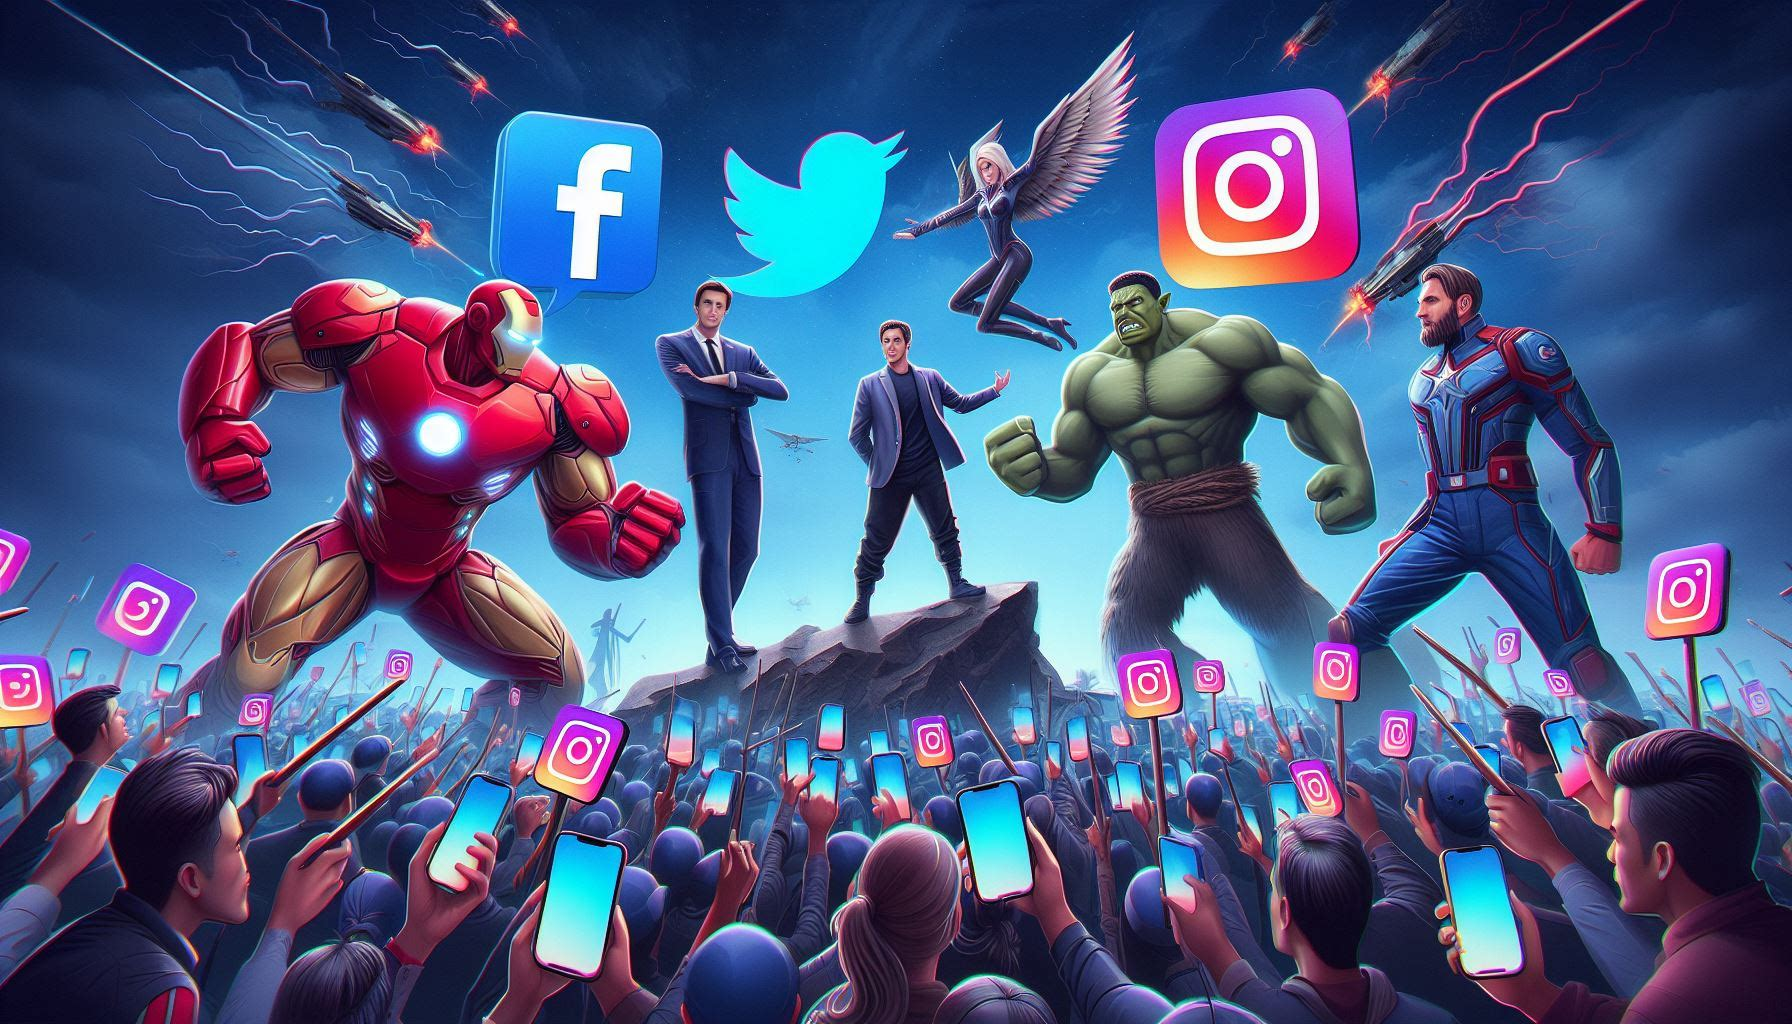 The Battle of Social Media Giants